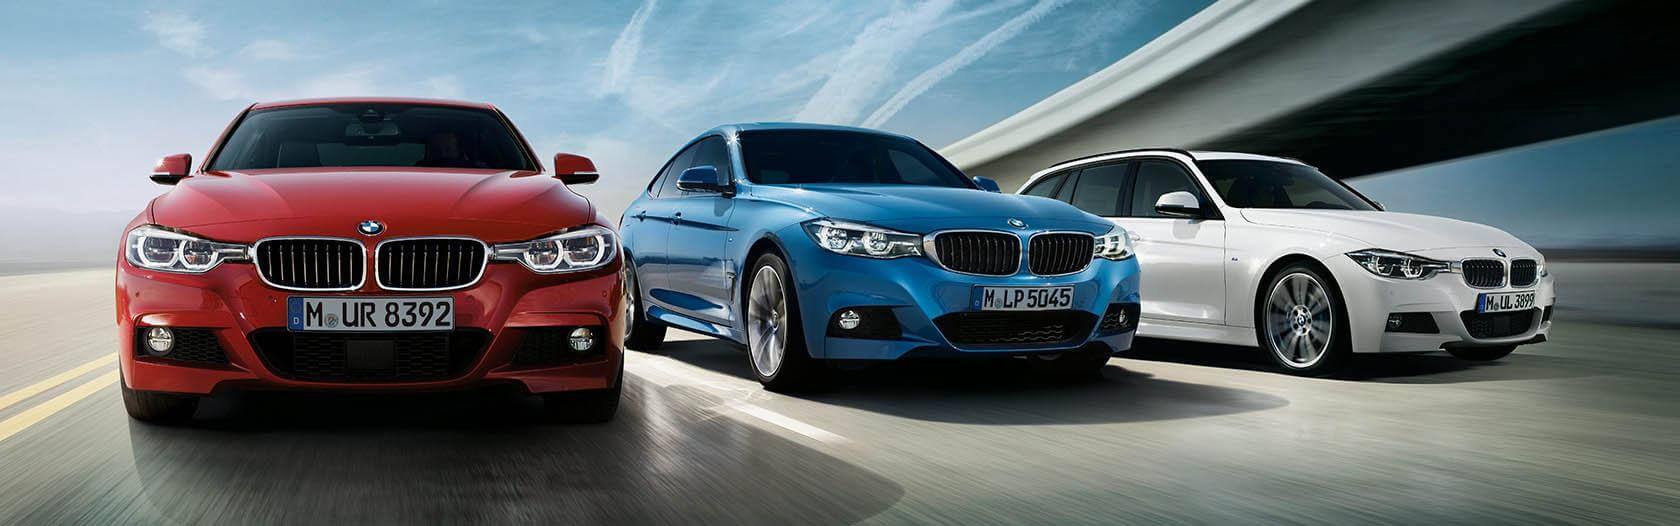 Lautsprecher und Verstärker Upgrade für BMW F- und G-Serie